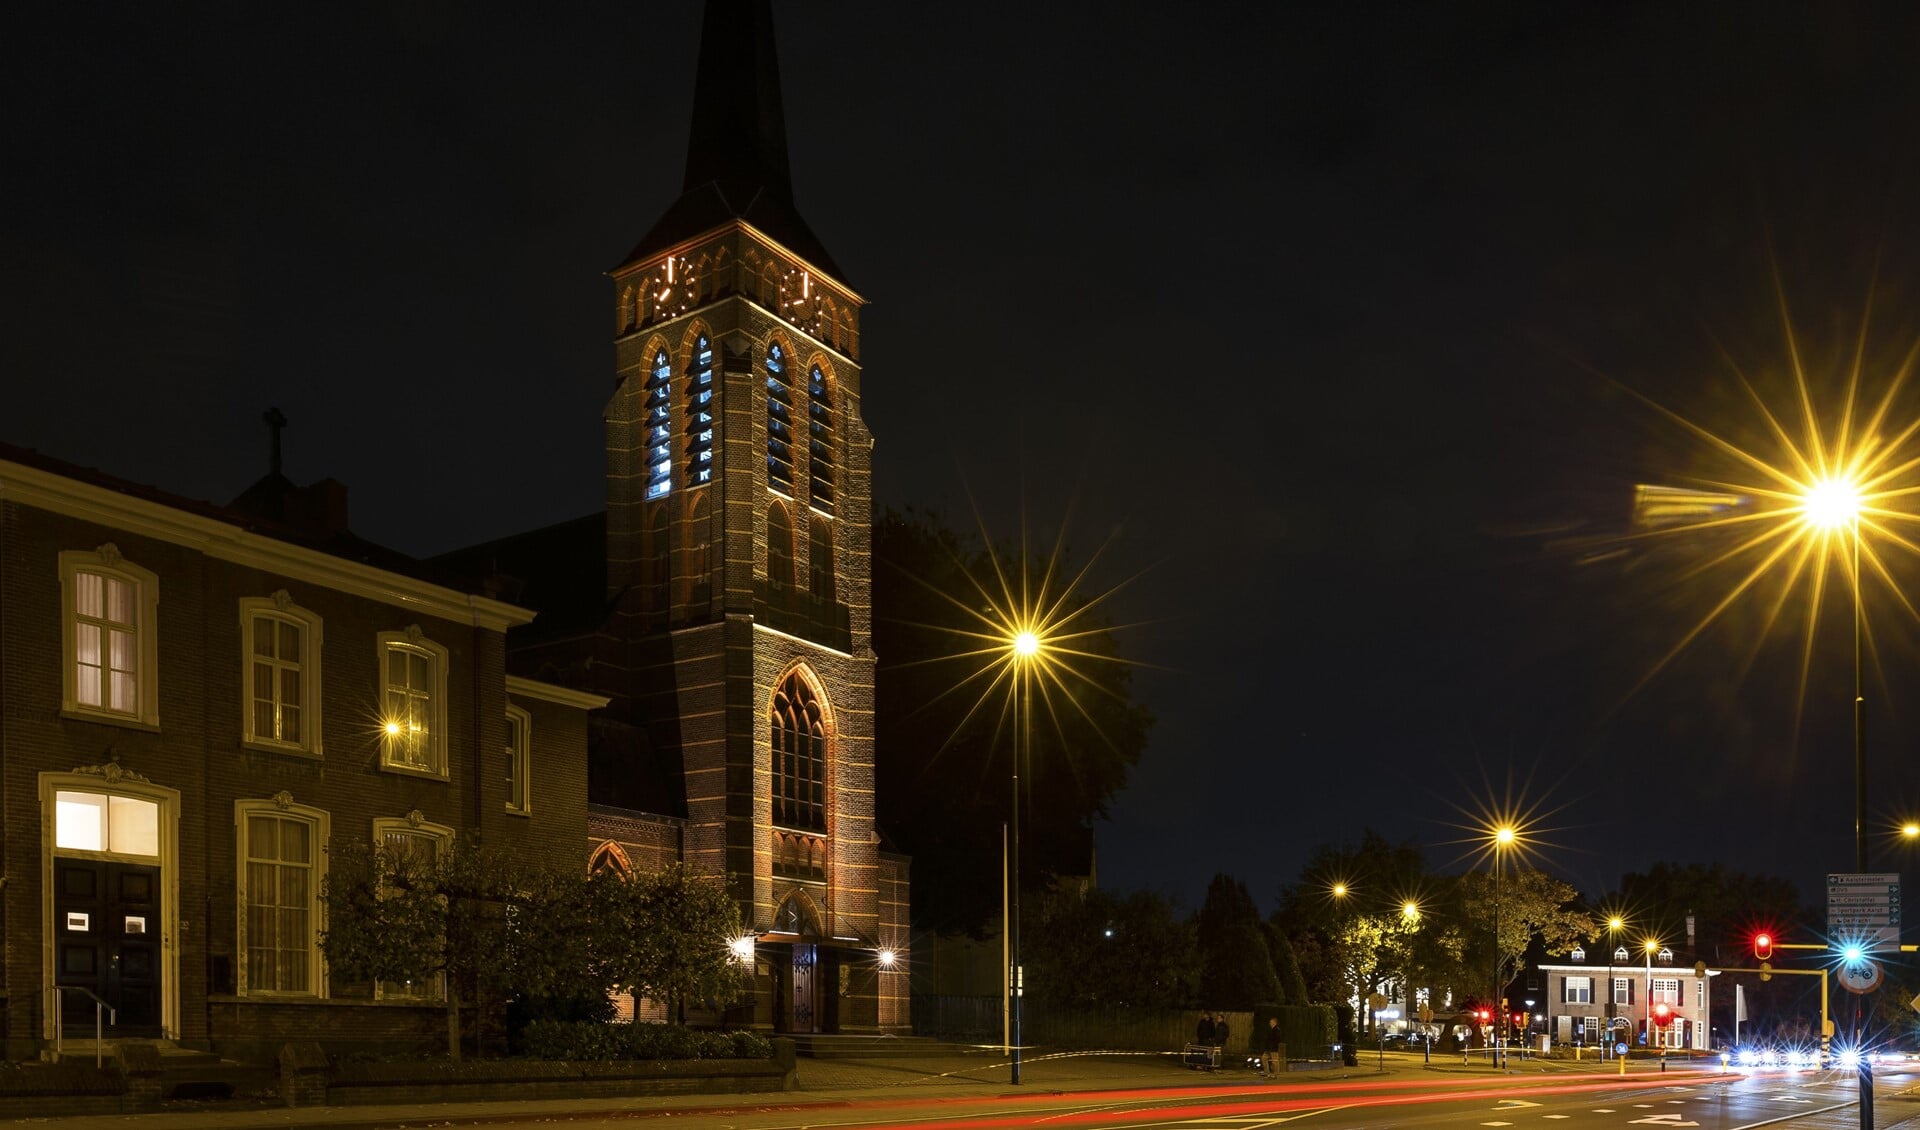 De kerktoren in veranderend licht. De gemeenteraad neemt nog een besluit hierover. (Foto: Connie Sinteur)